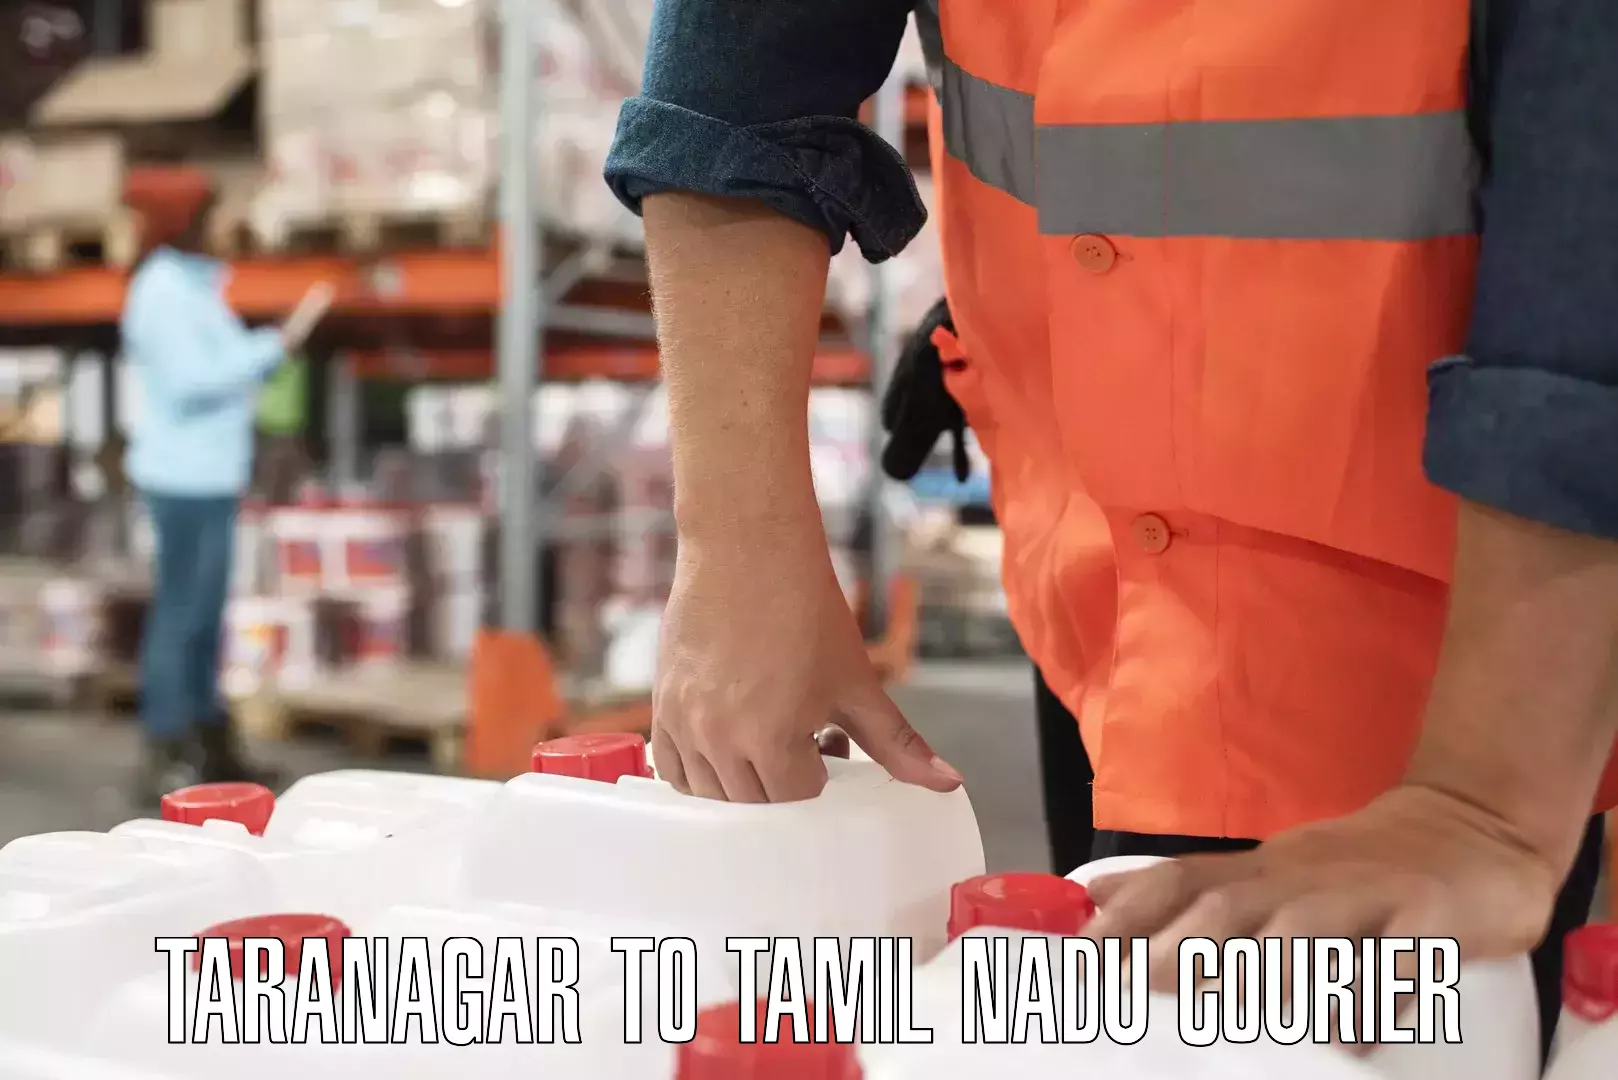 Express logistics providers Taranagar to Tamil Nadu